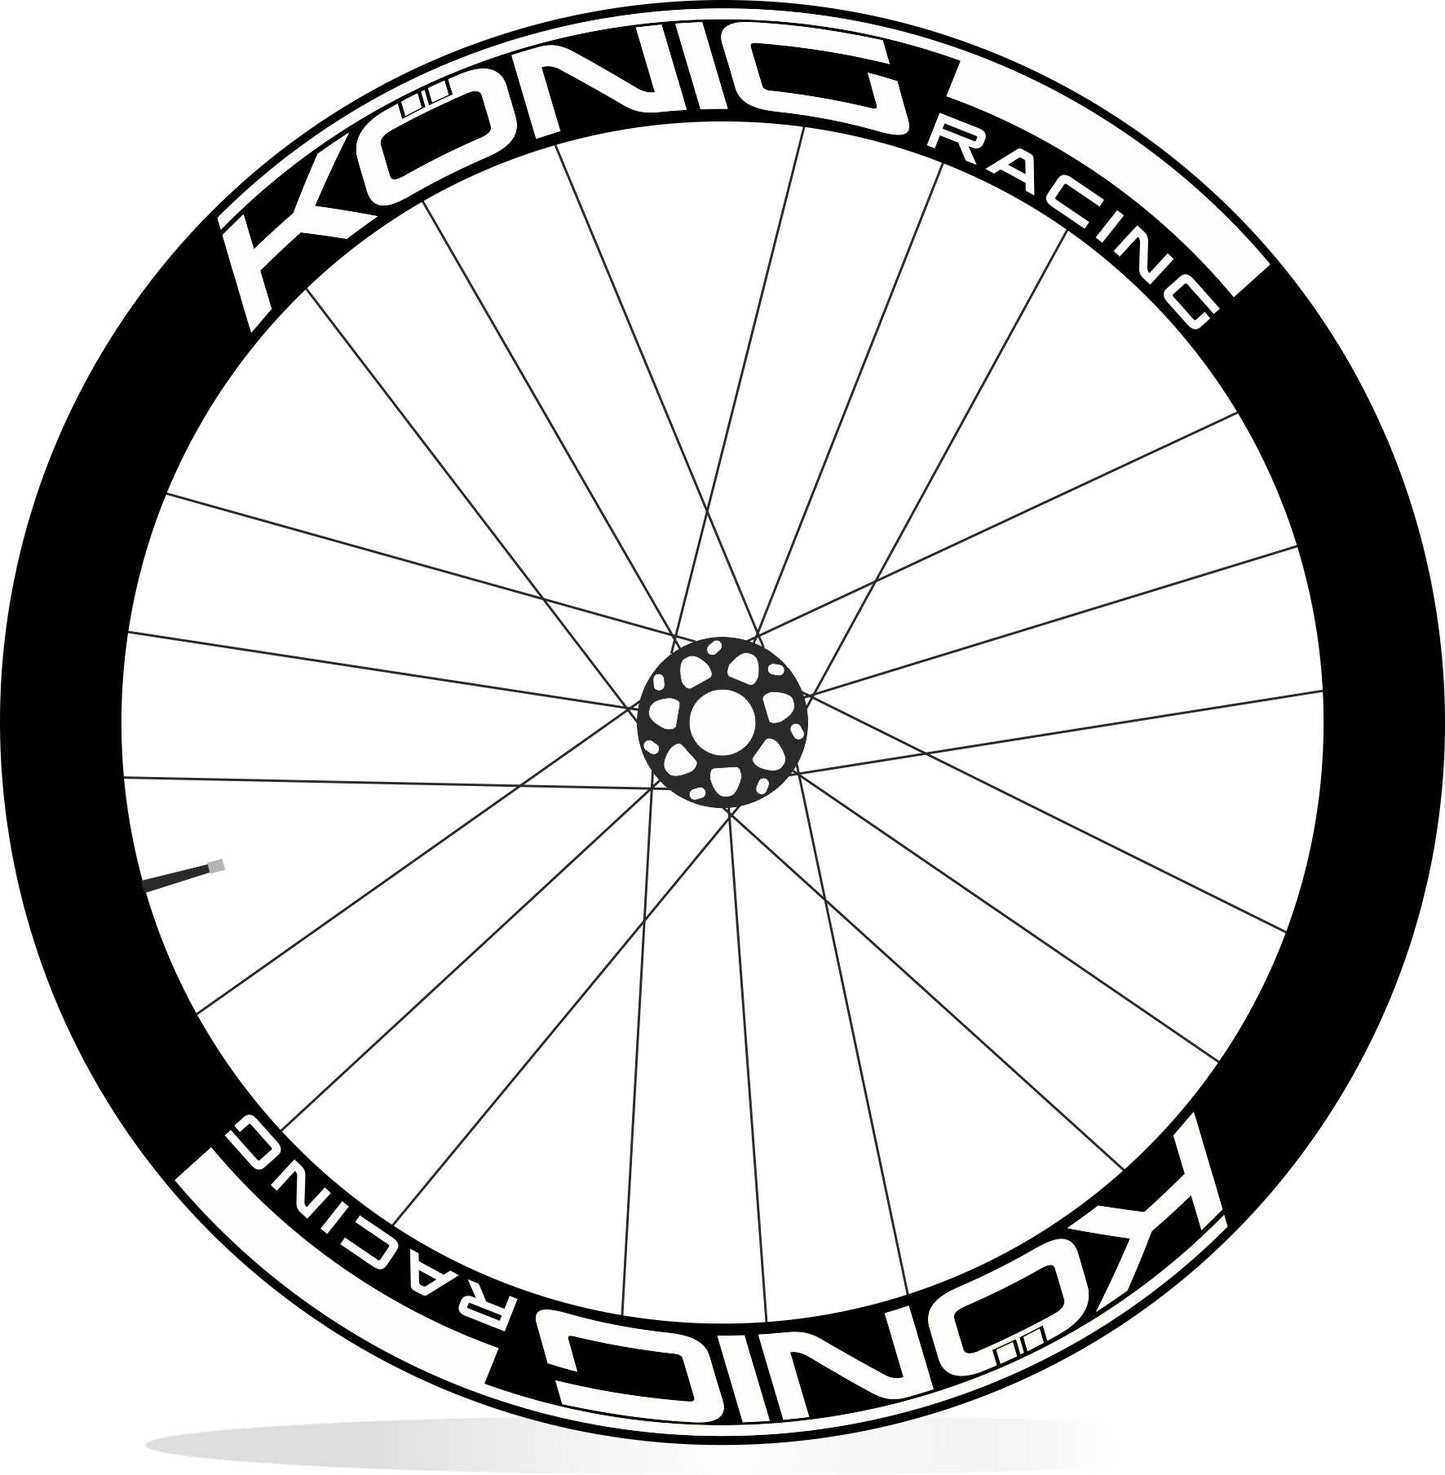 KONIG Racing adesivi personalizzati per cerchi bici da corsa